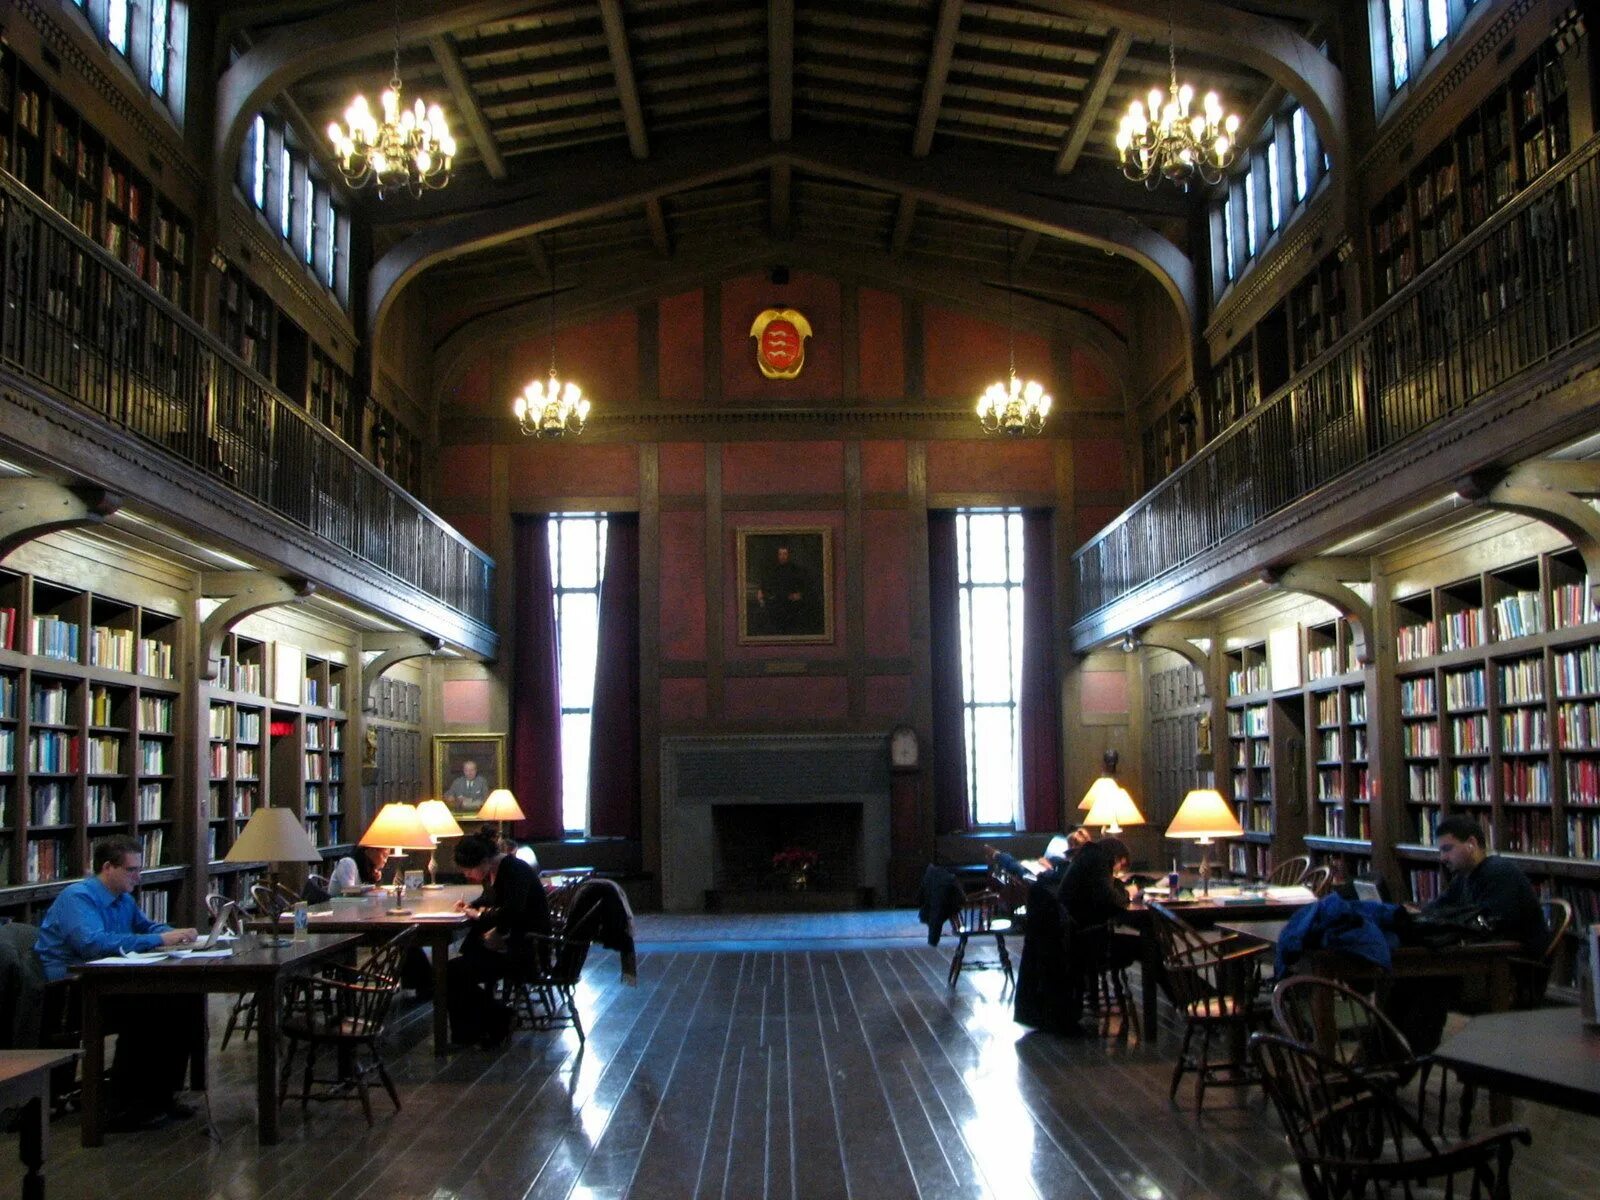 Library of medicine. Йельский университет библиотека. Йельский университет США библиотека. Йельский университет внутри. Йельский университет библиотека здание.